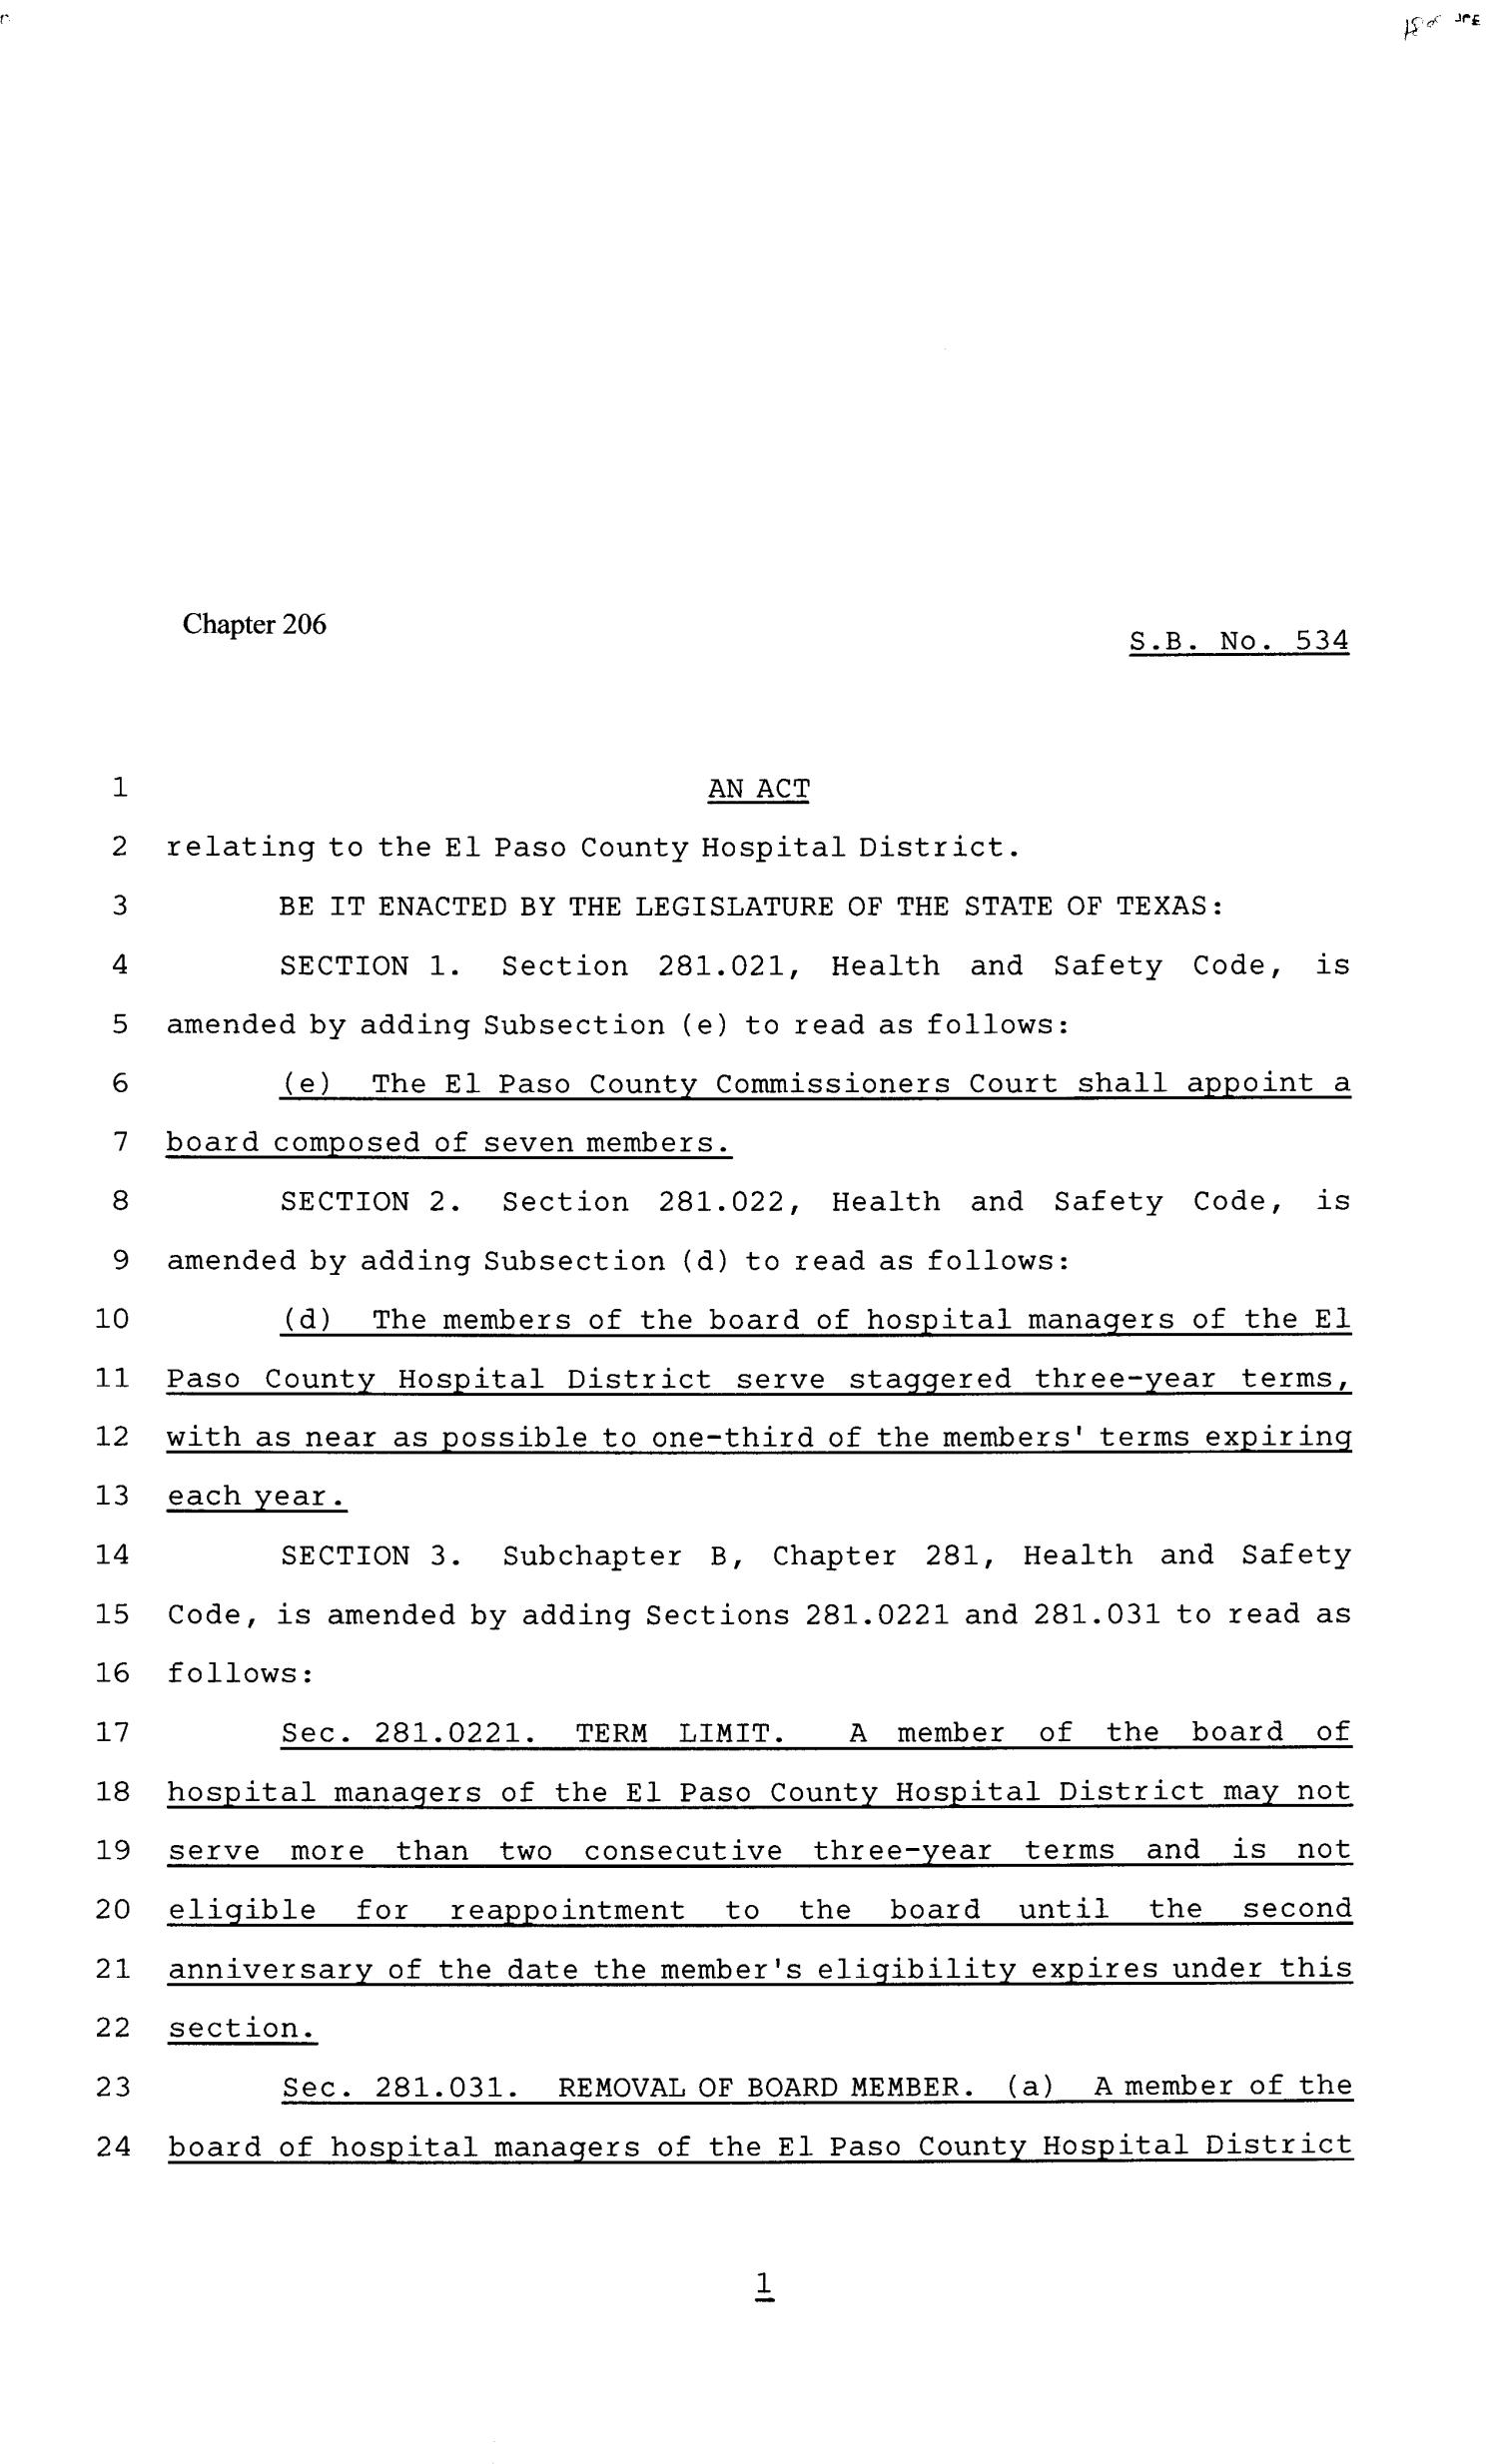 81st Texas Legislature, Senate Bill 534, Chapter 206
                                                
                                                    [Sequence #]: 1 of 3
                                                